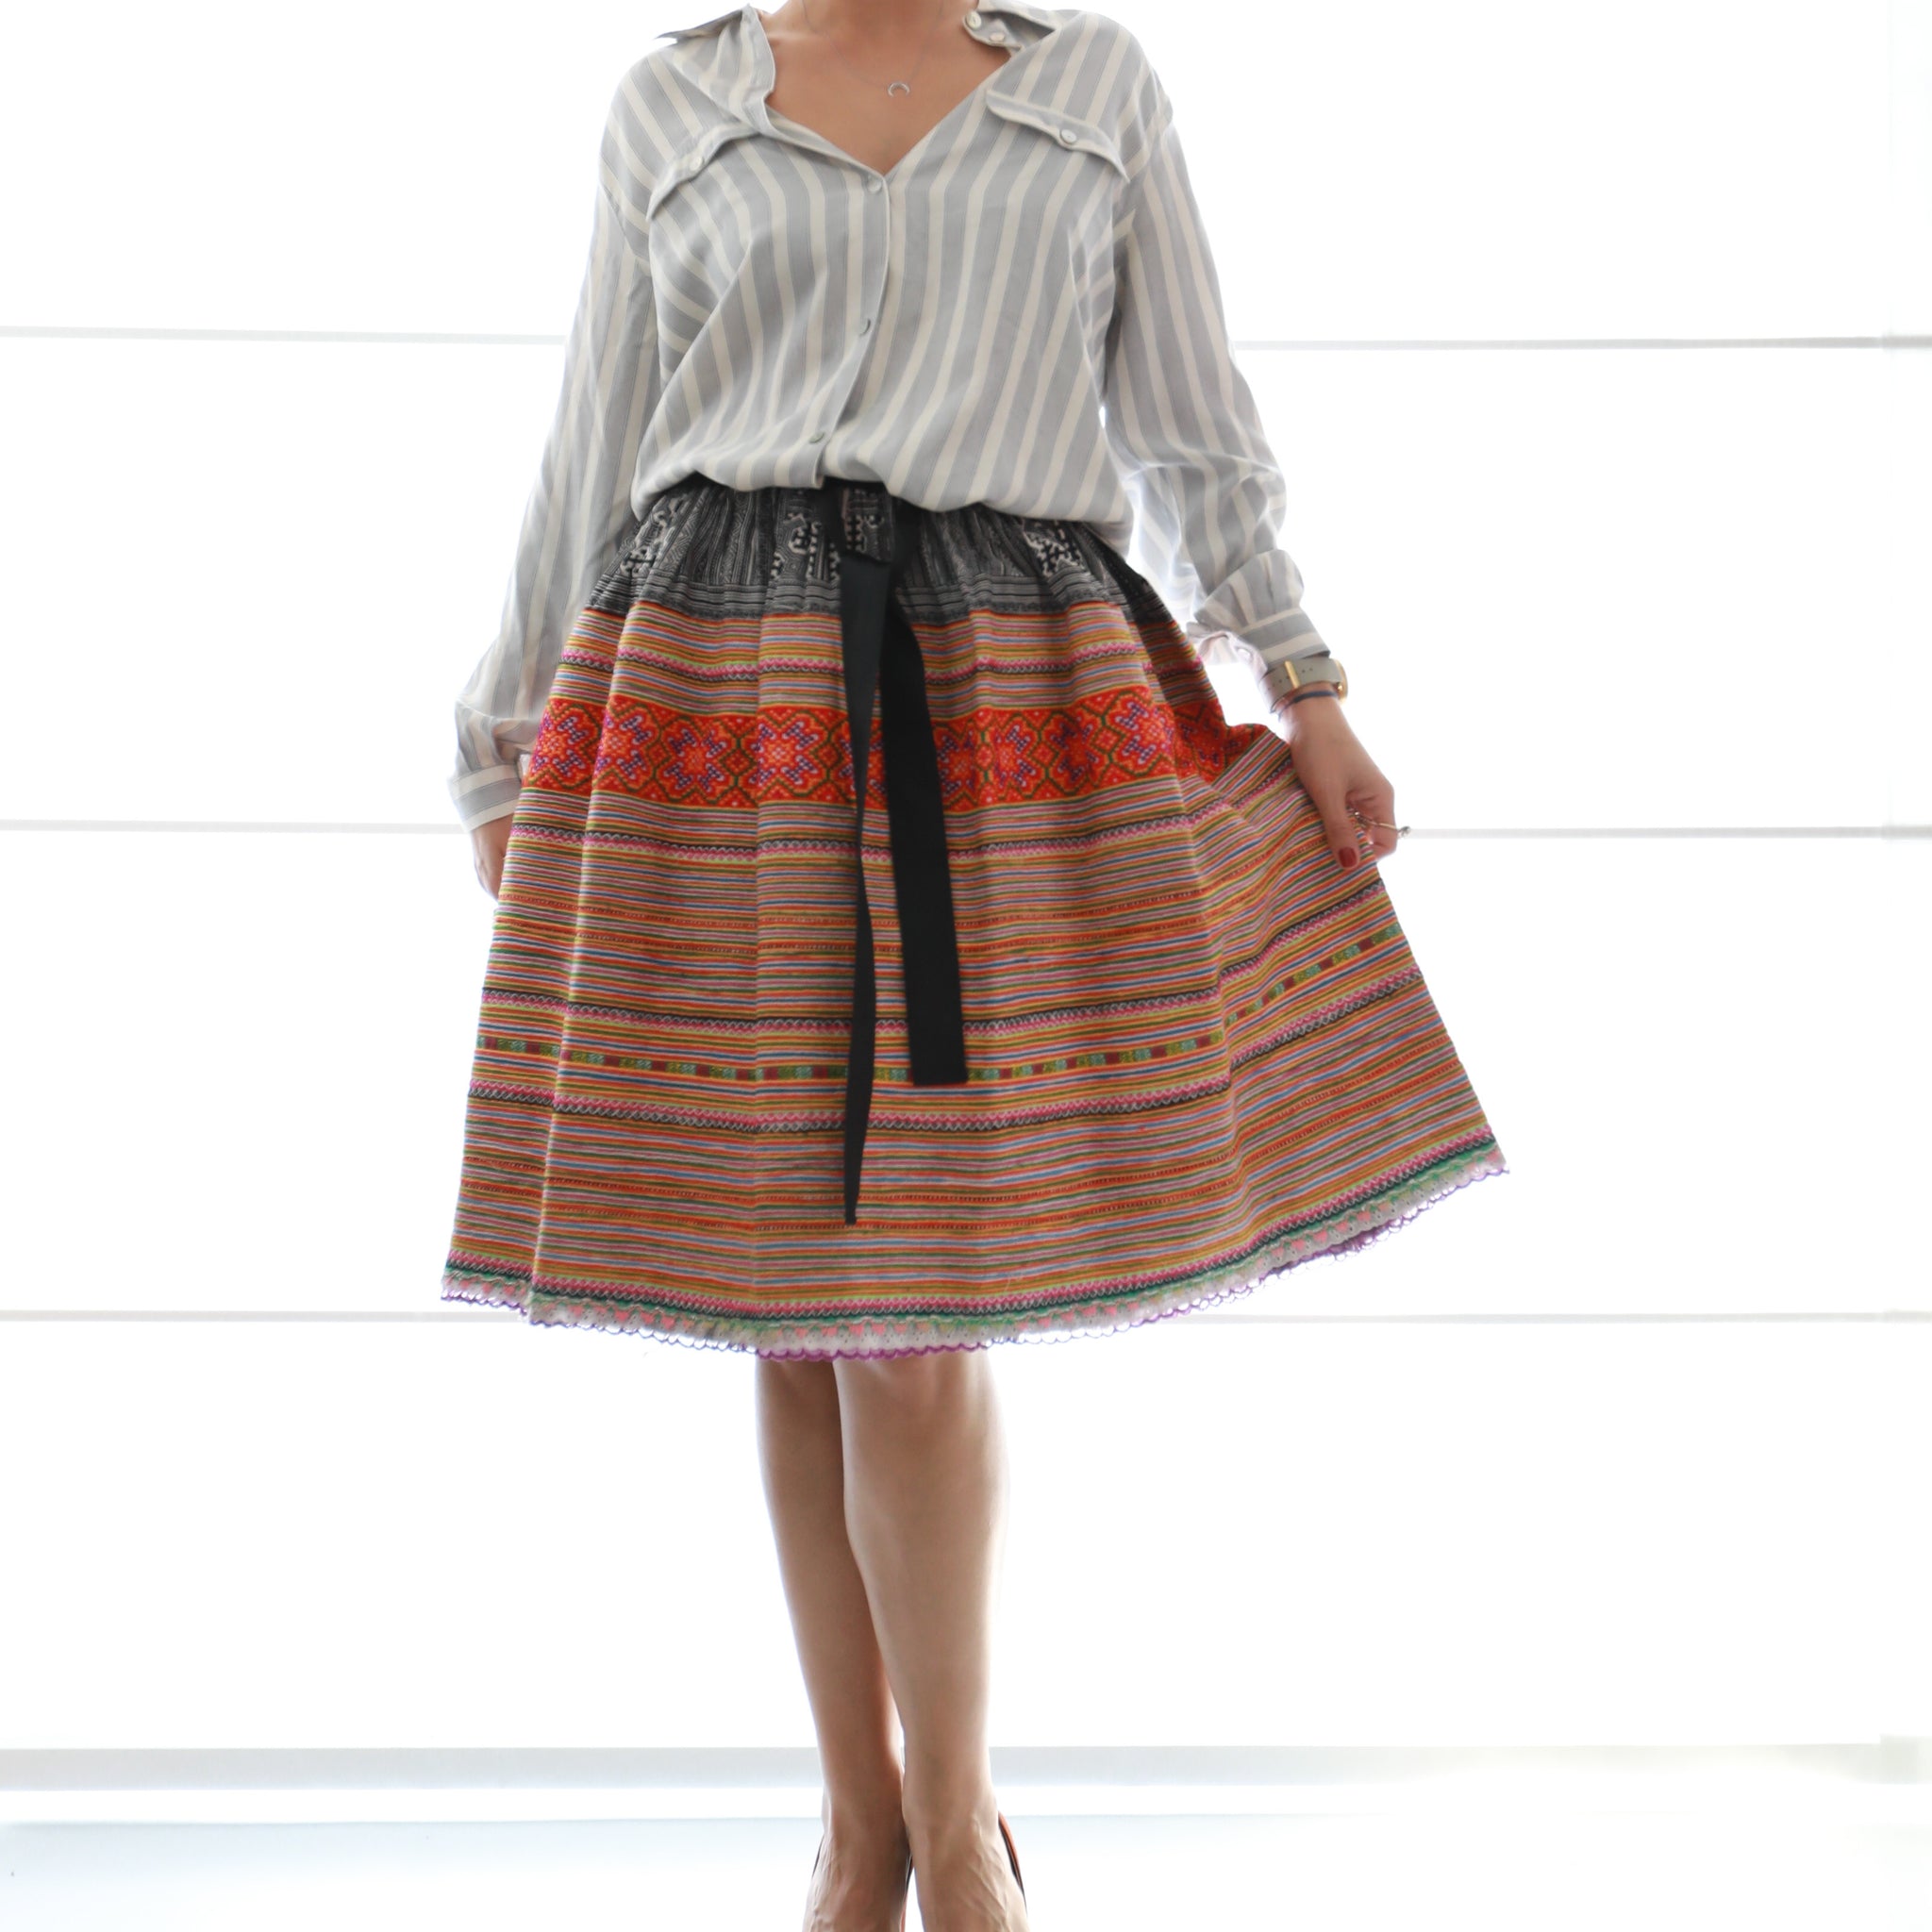 Hand Embroidered Hmong Skirt